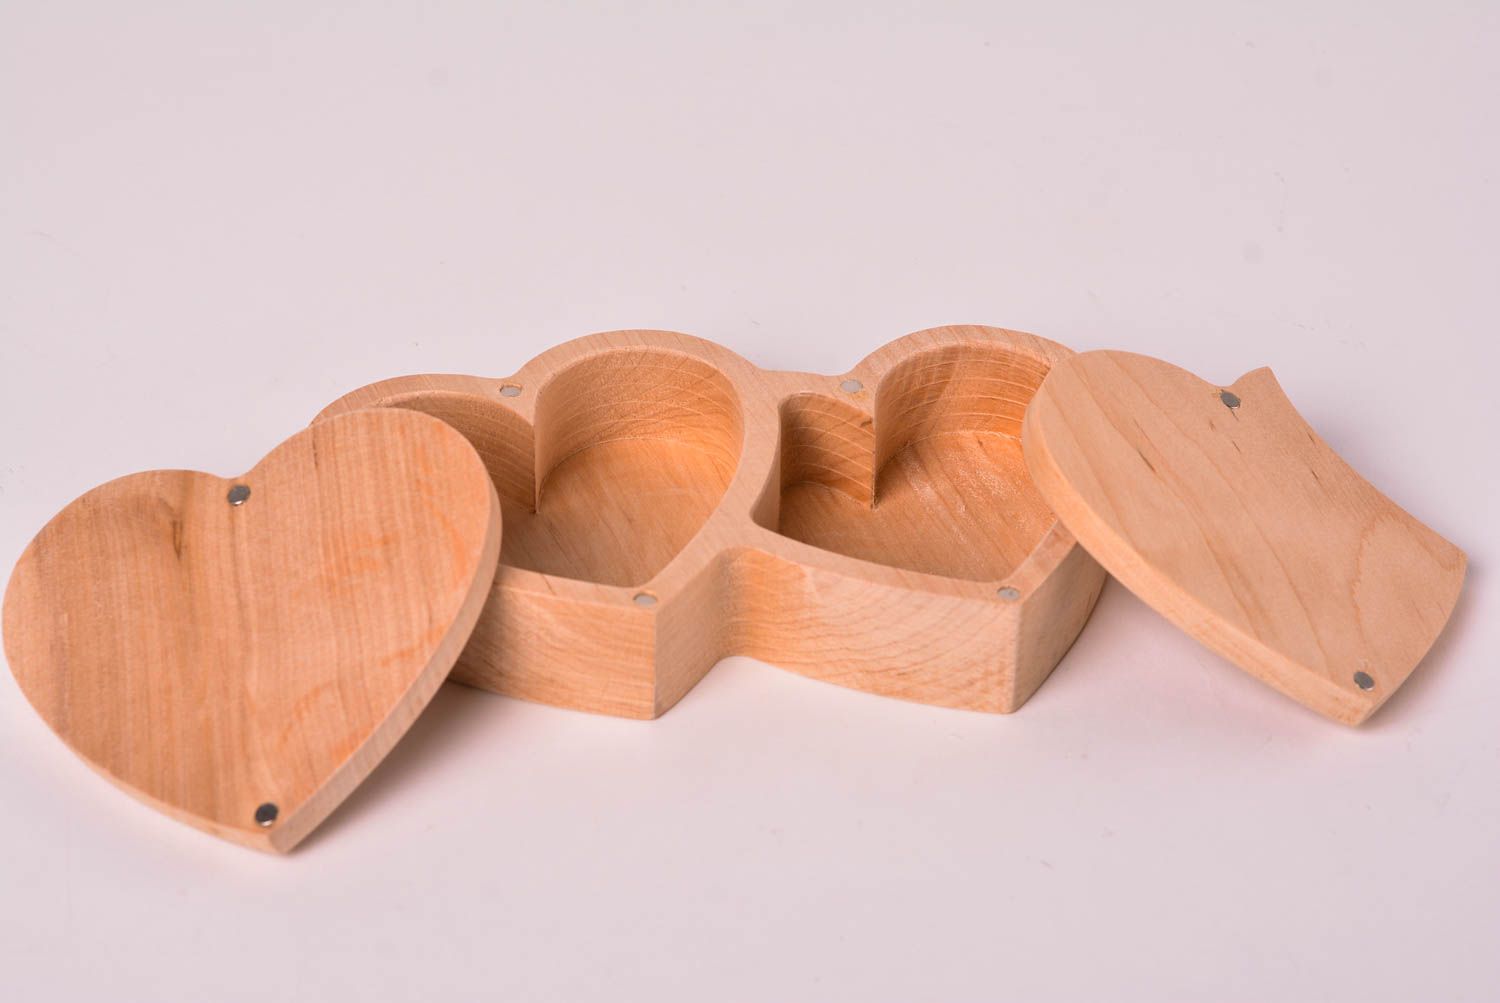 Wooden craft. Деревянные изделия сувениры. Интересные изделия из дерева. Сувенирная продукция из дерева. Мини изделия из дерева.